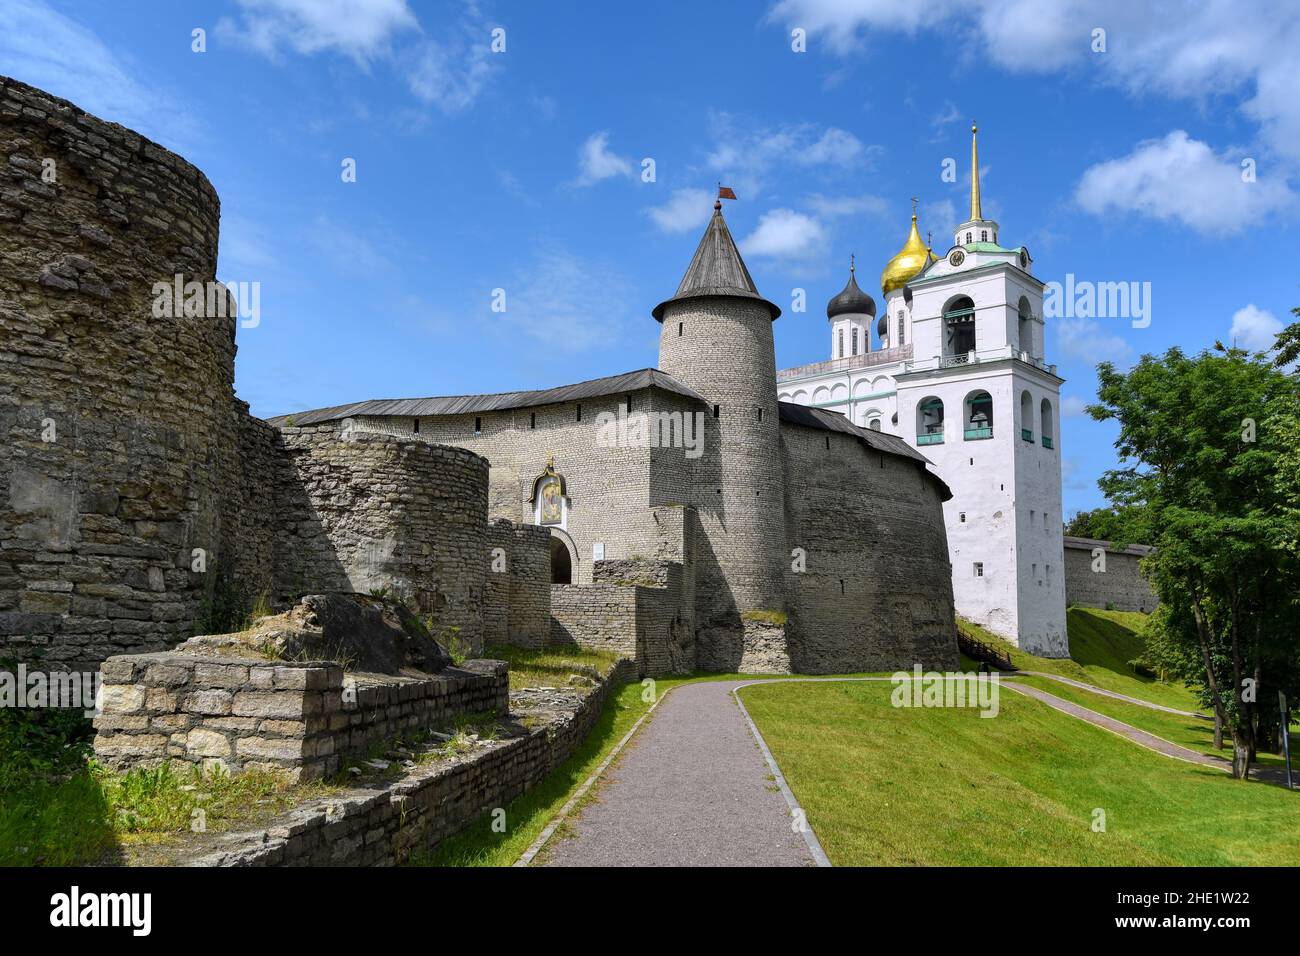 Die Dreifaltigkeitskathedrale und die Mauern des historischen Pskower Kremls in der russischen Stadt Pskow Stockfoto